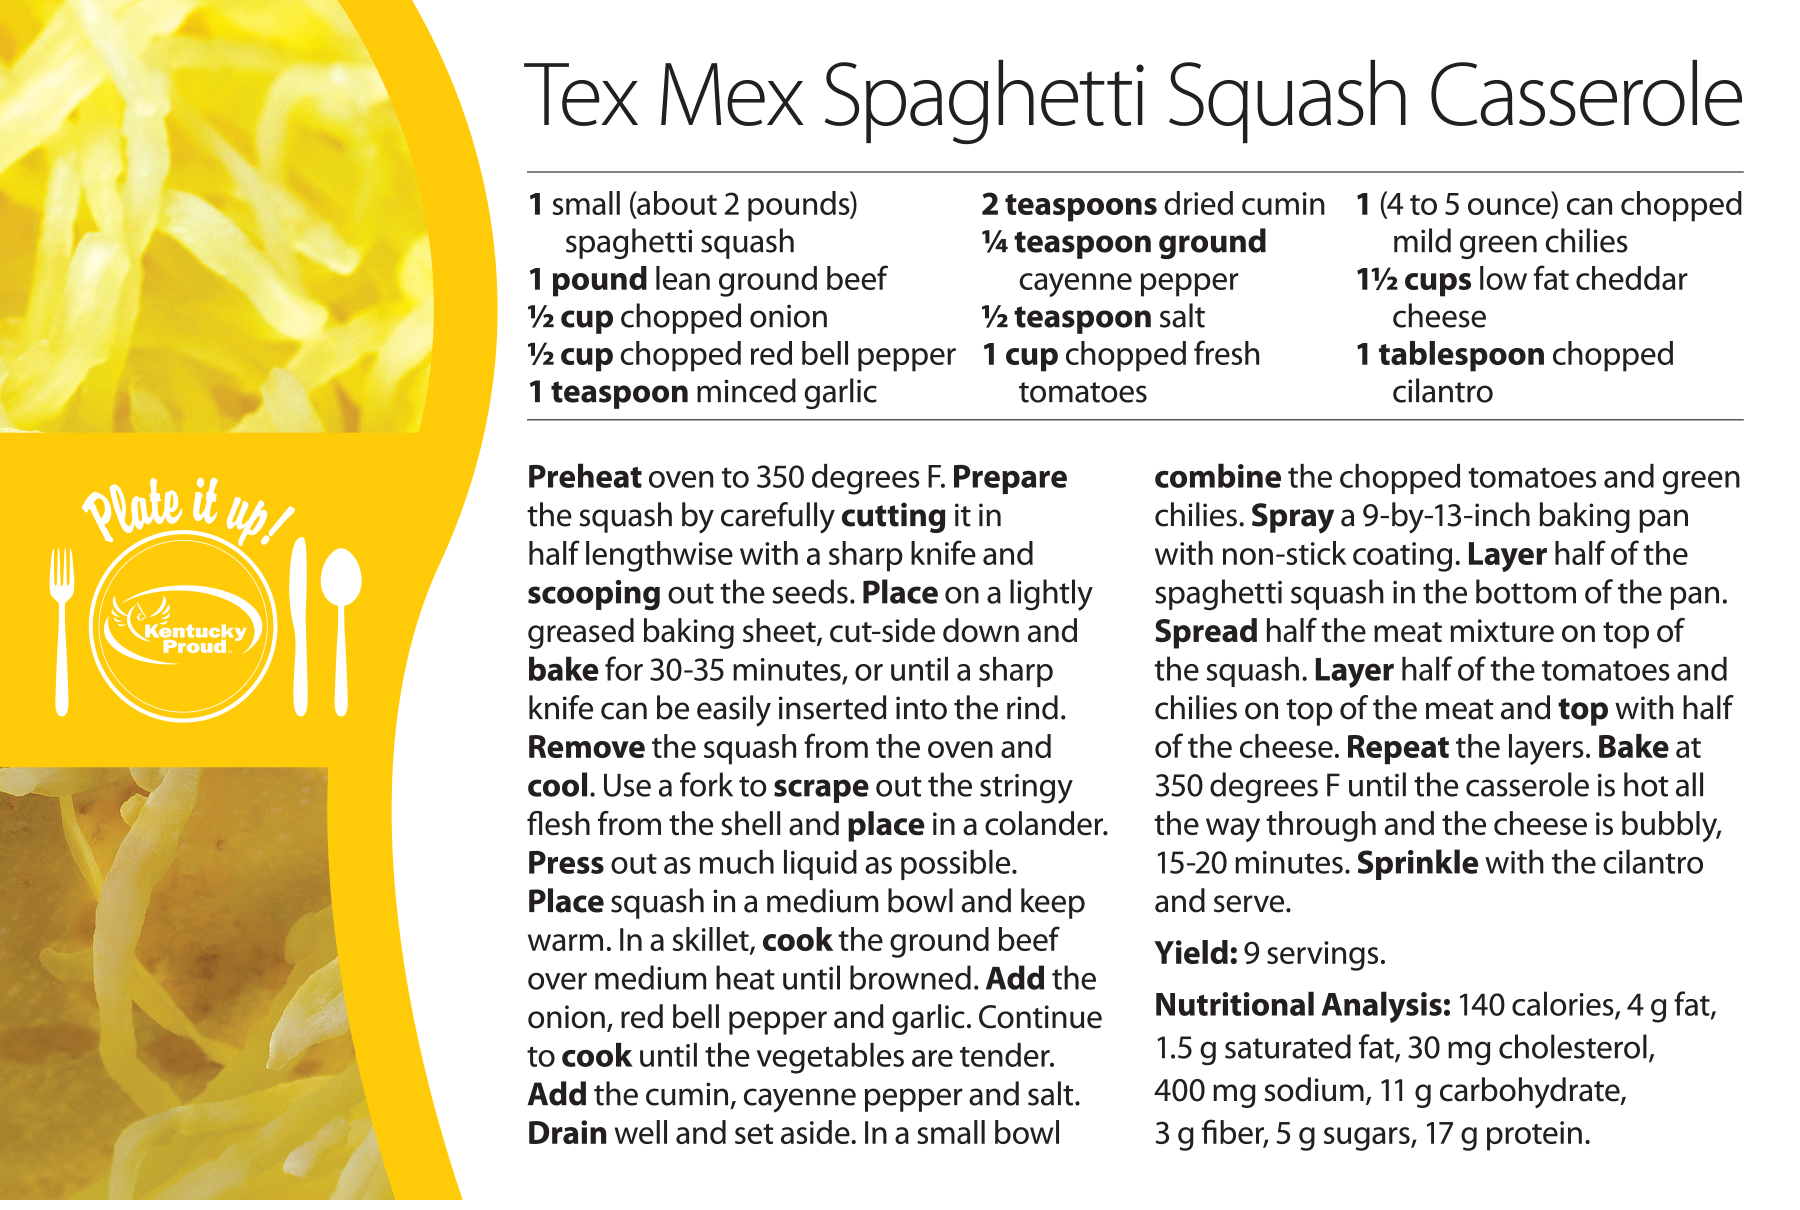 Tex Mex Spaghetti Squash Casserole reciple